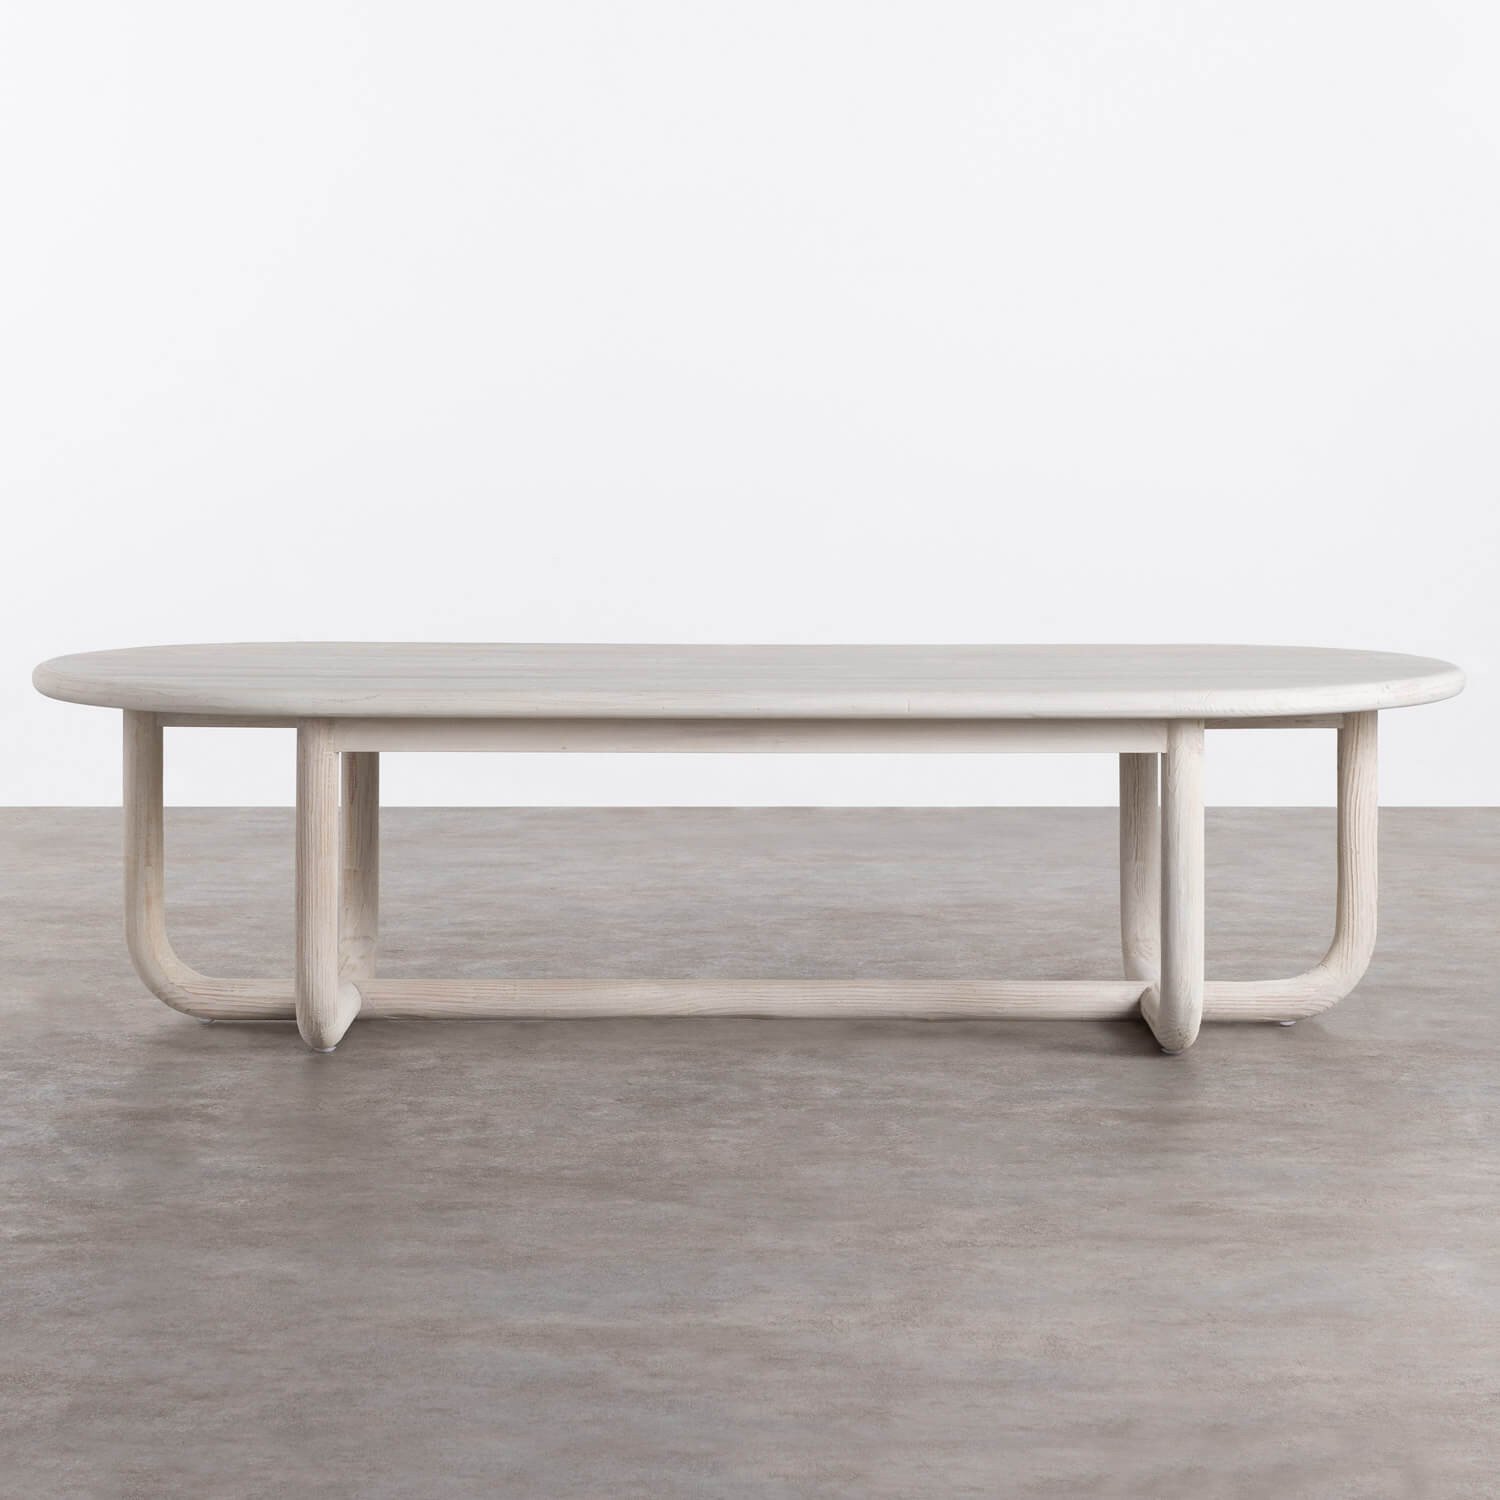 Tavolino Ovale in Legno di Pino (160x70 cm) Conste, immagine della galleria 1